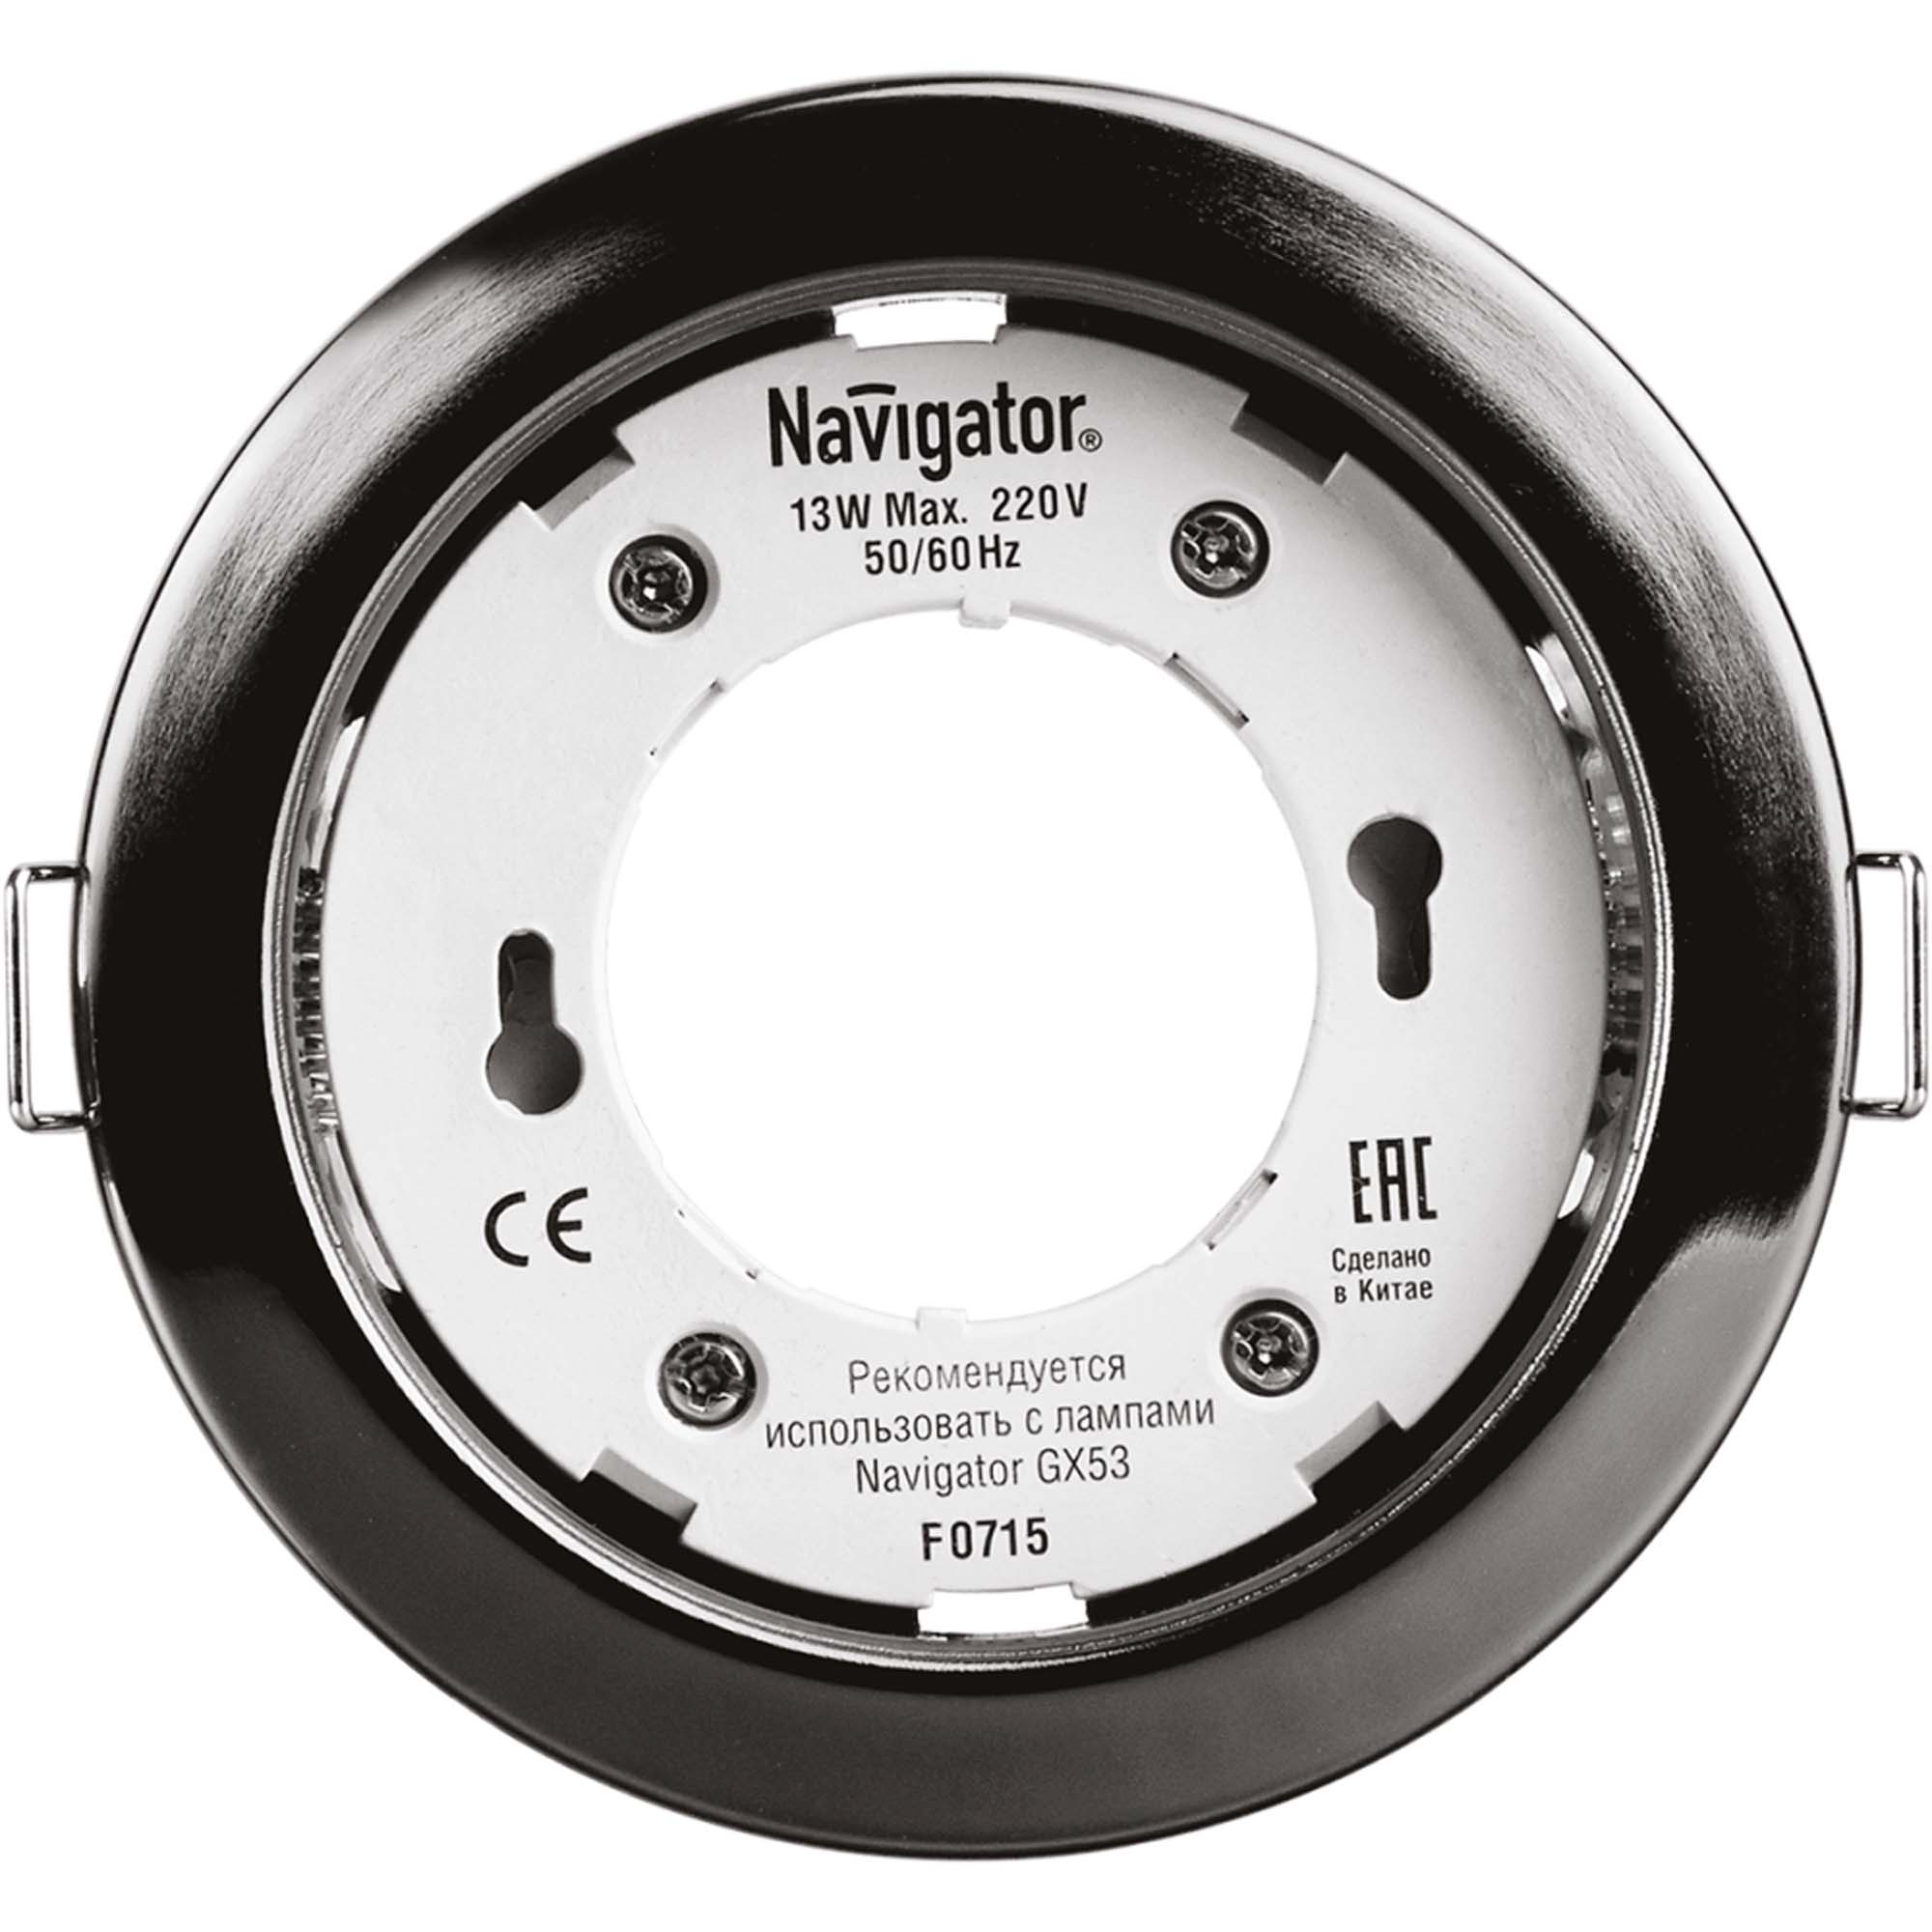 Где купить Светильник встраиваемый Navigator gx53-черный хром Navigator 